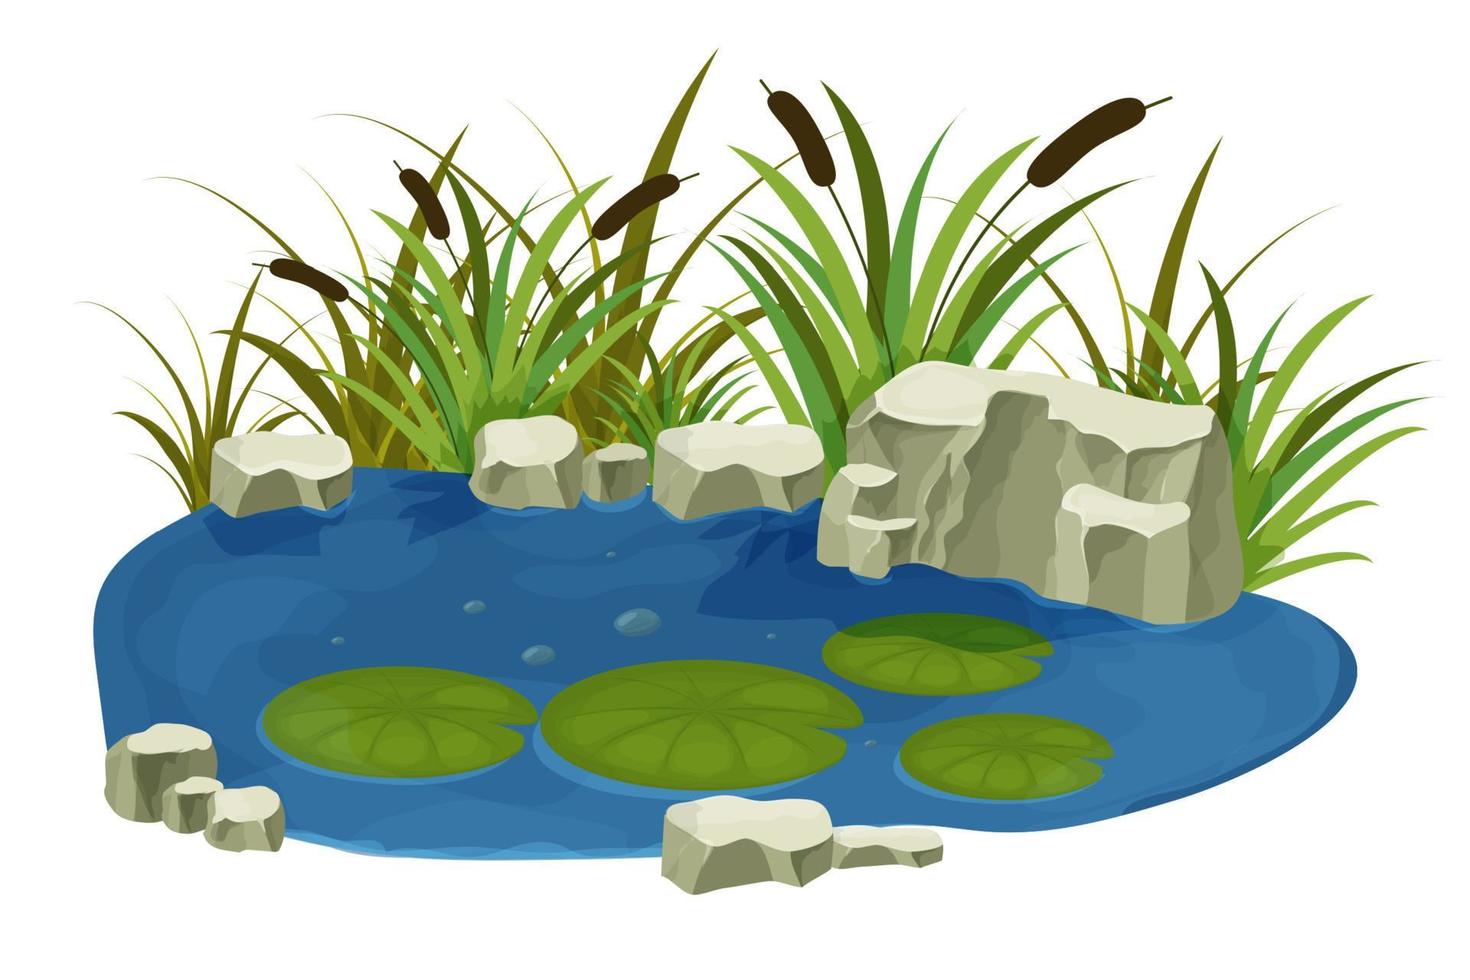 meer, moeras met stenen, lisdodde lelie bladeren in cartoon stijl geïsoleerd op een witte achtergrond. bos fantasiescène, wilde natuur. vector illustratie